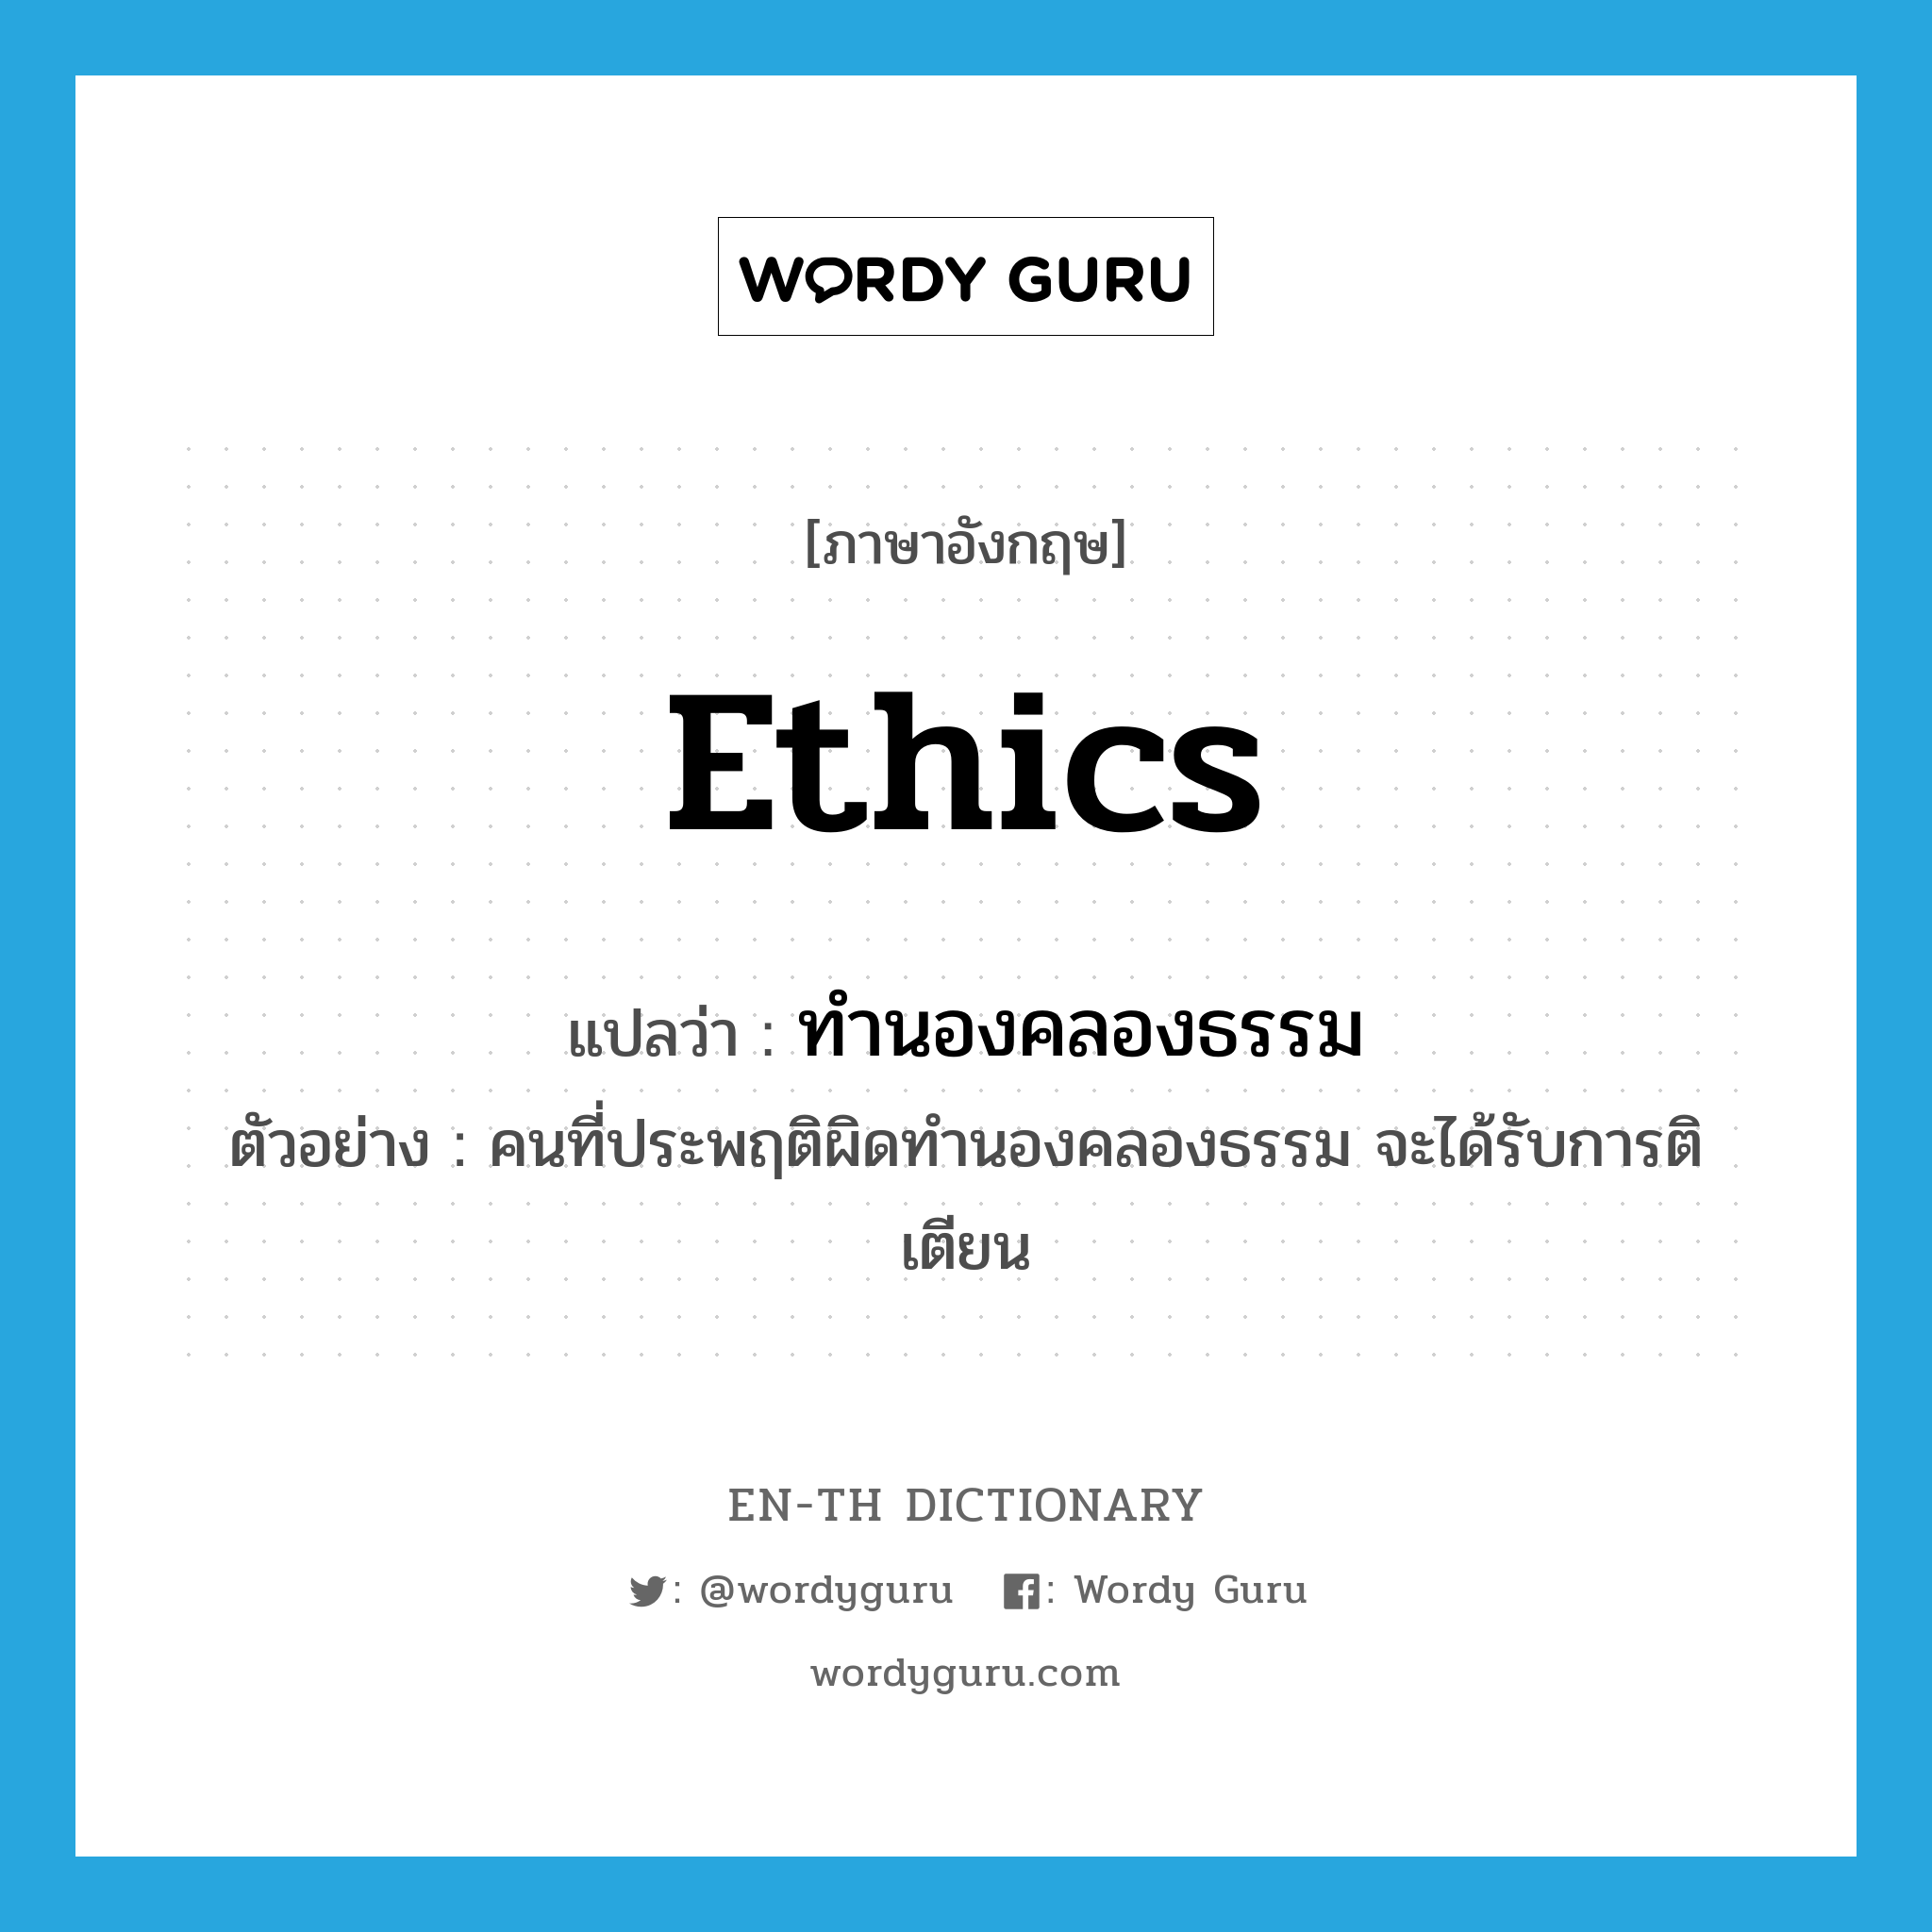 ethics แปลว่า?, คำศัพท์ภาษาอังกฤษ ethics แปลว่า ทำนองคลองธรรม ประเภท N ตัวอย่าง คนที่ประพฤติผิดทำนองคลองธรรม จะได้รับการติเตียน หมวด N